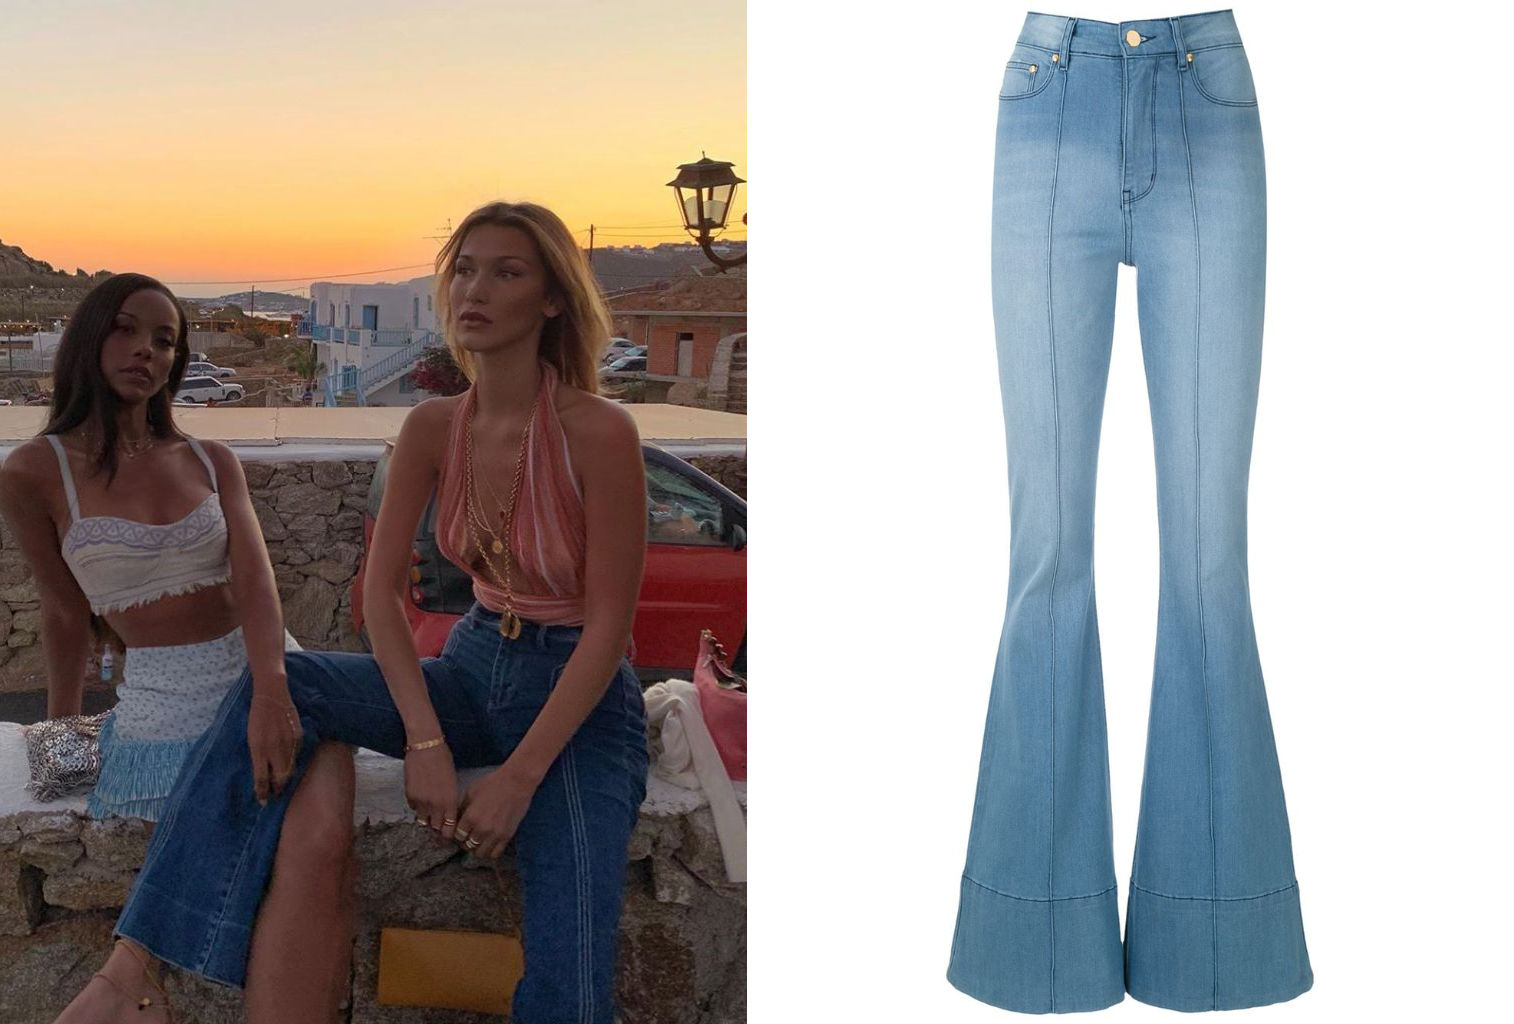 70s flare jeans - Women